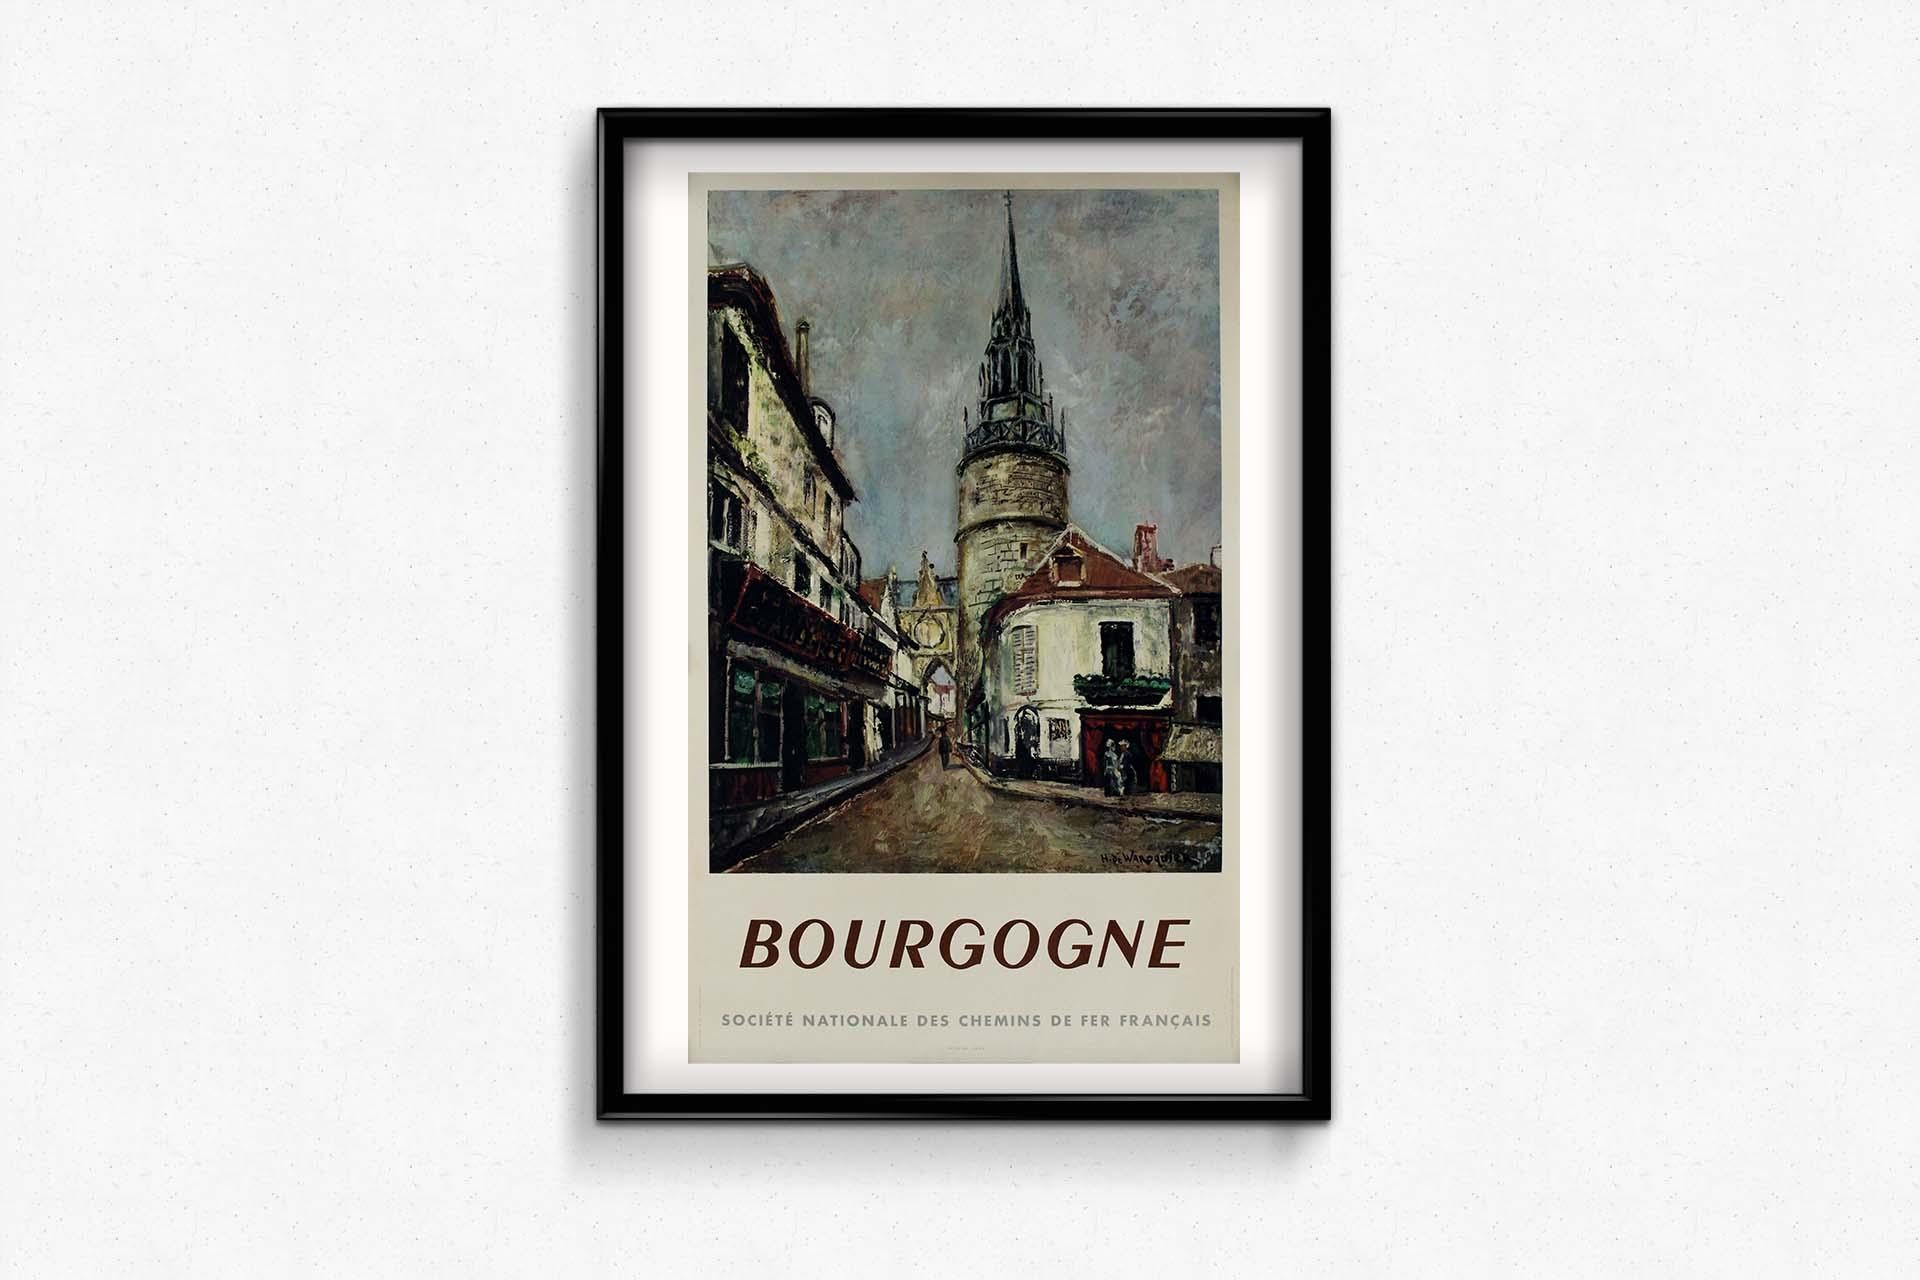 Das Original-Reiseplakat von Henry De Waroquier für Bourgogne aus dem Jahr 1949, das von der SNCF gesponsert wurde, lädt den Betrachter zu einer fesselnden Reise durch die malerischen Landschaften des Burgunds ein.
Das künstlerische Meisterwerk von